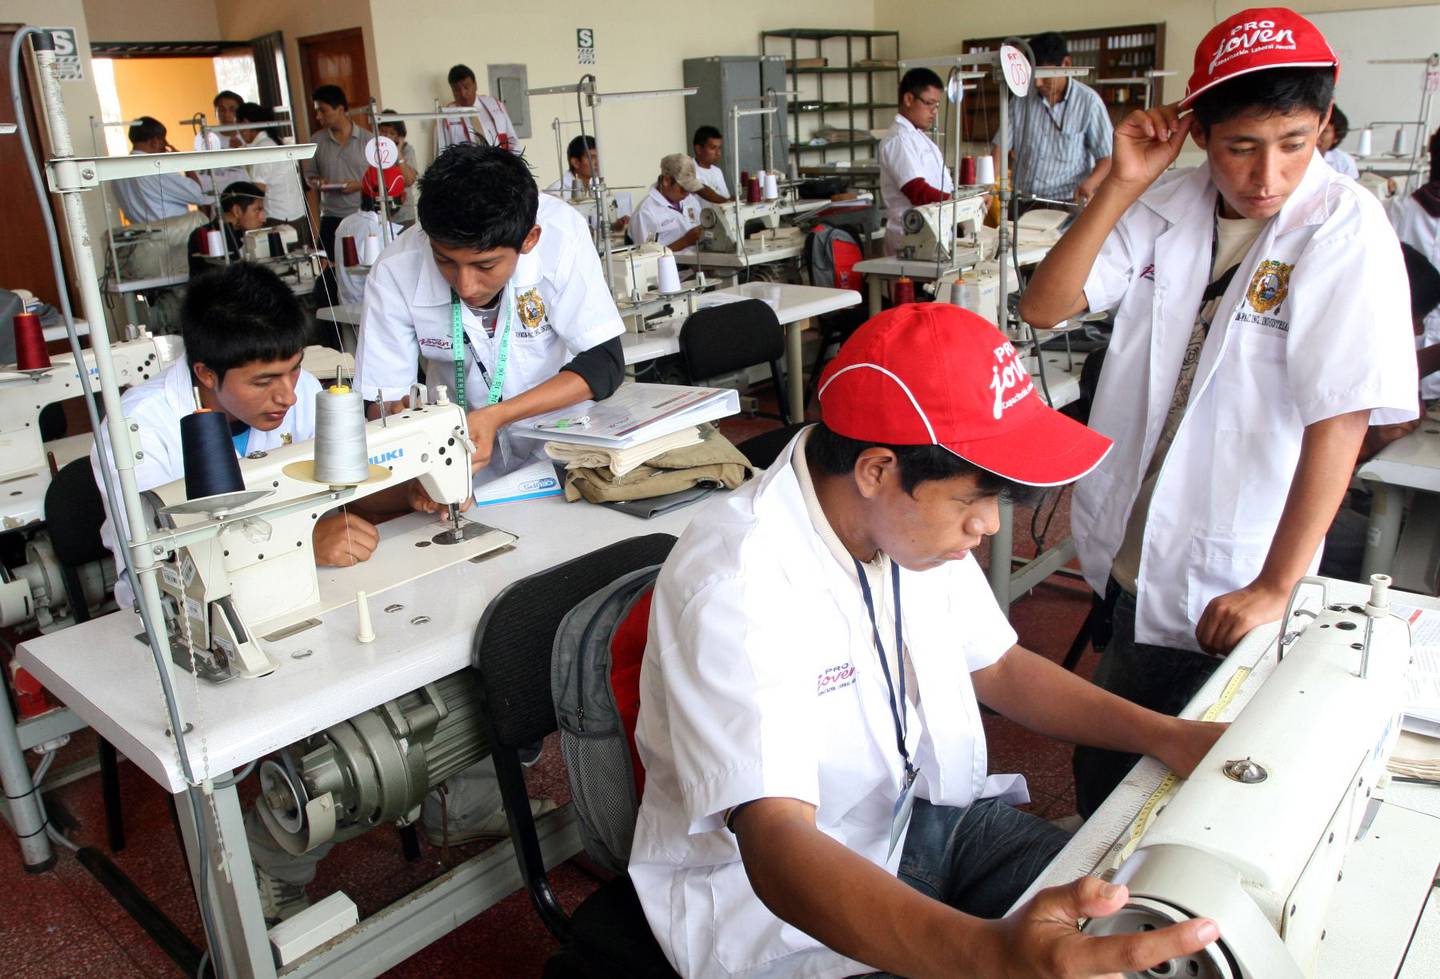 El empleo juvenil en el Perú no ha logrado acelerarse en los últimos años.dfd